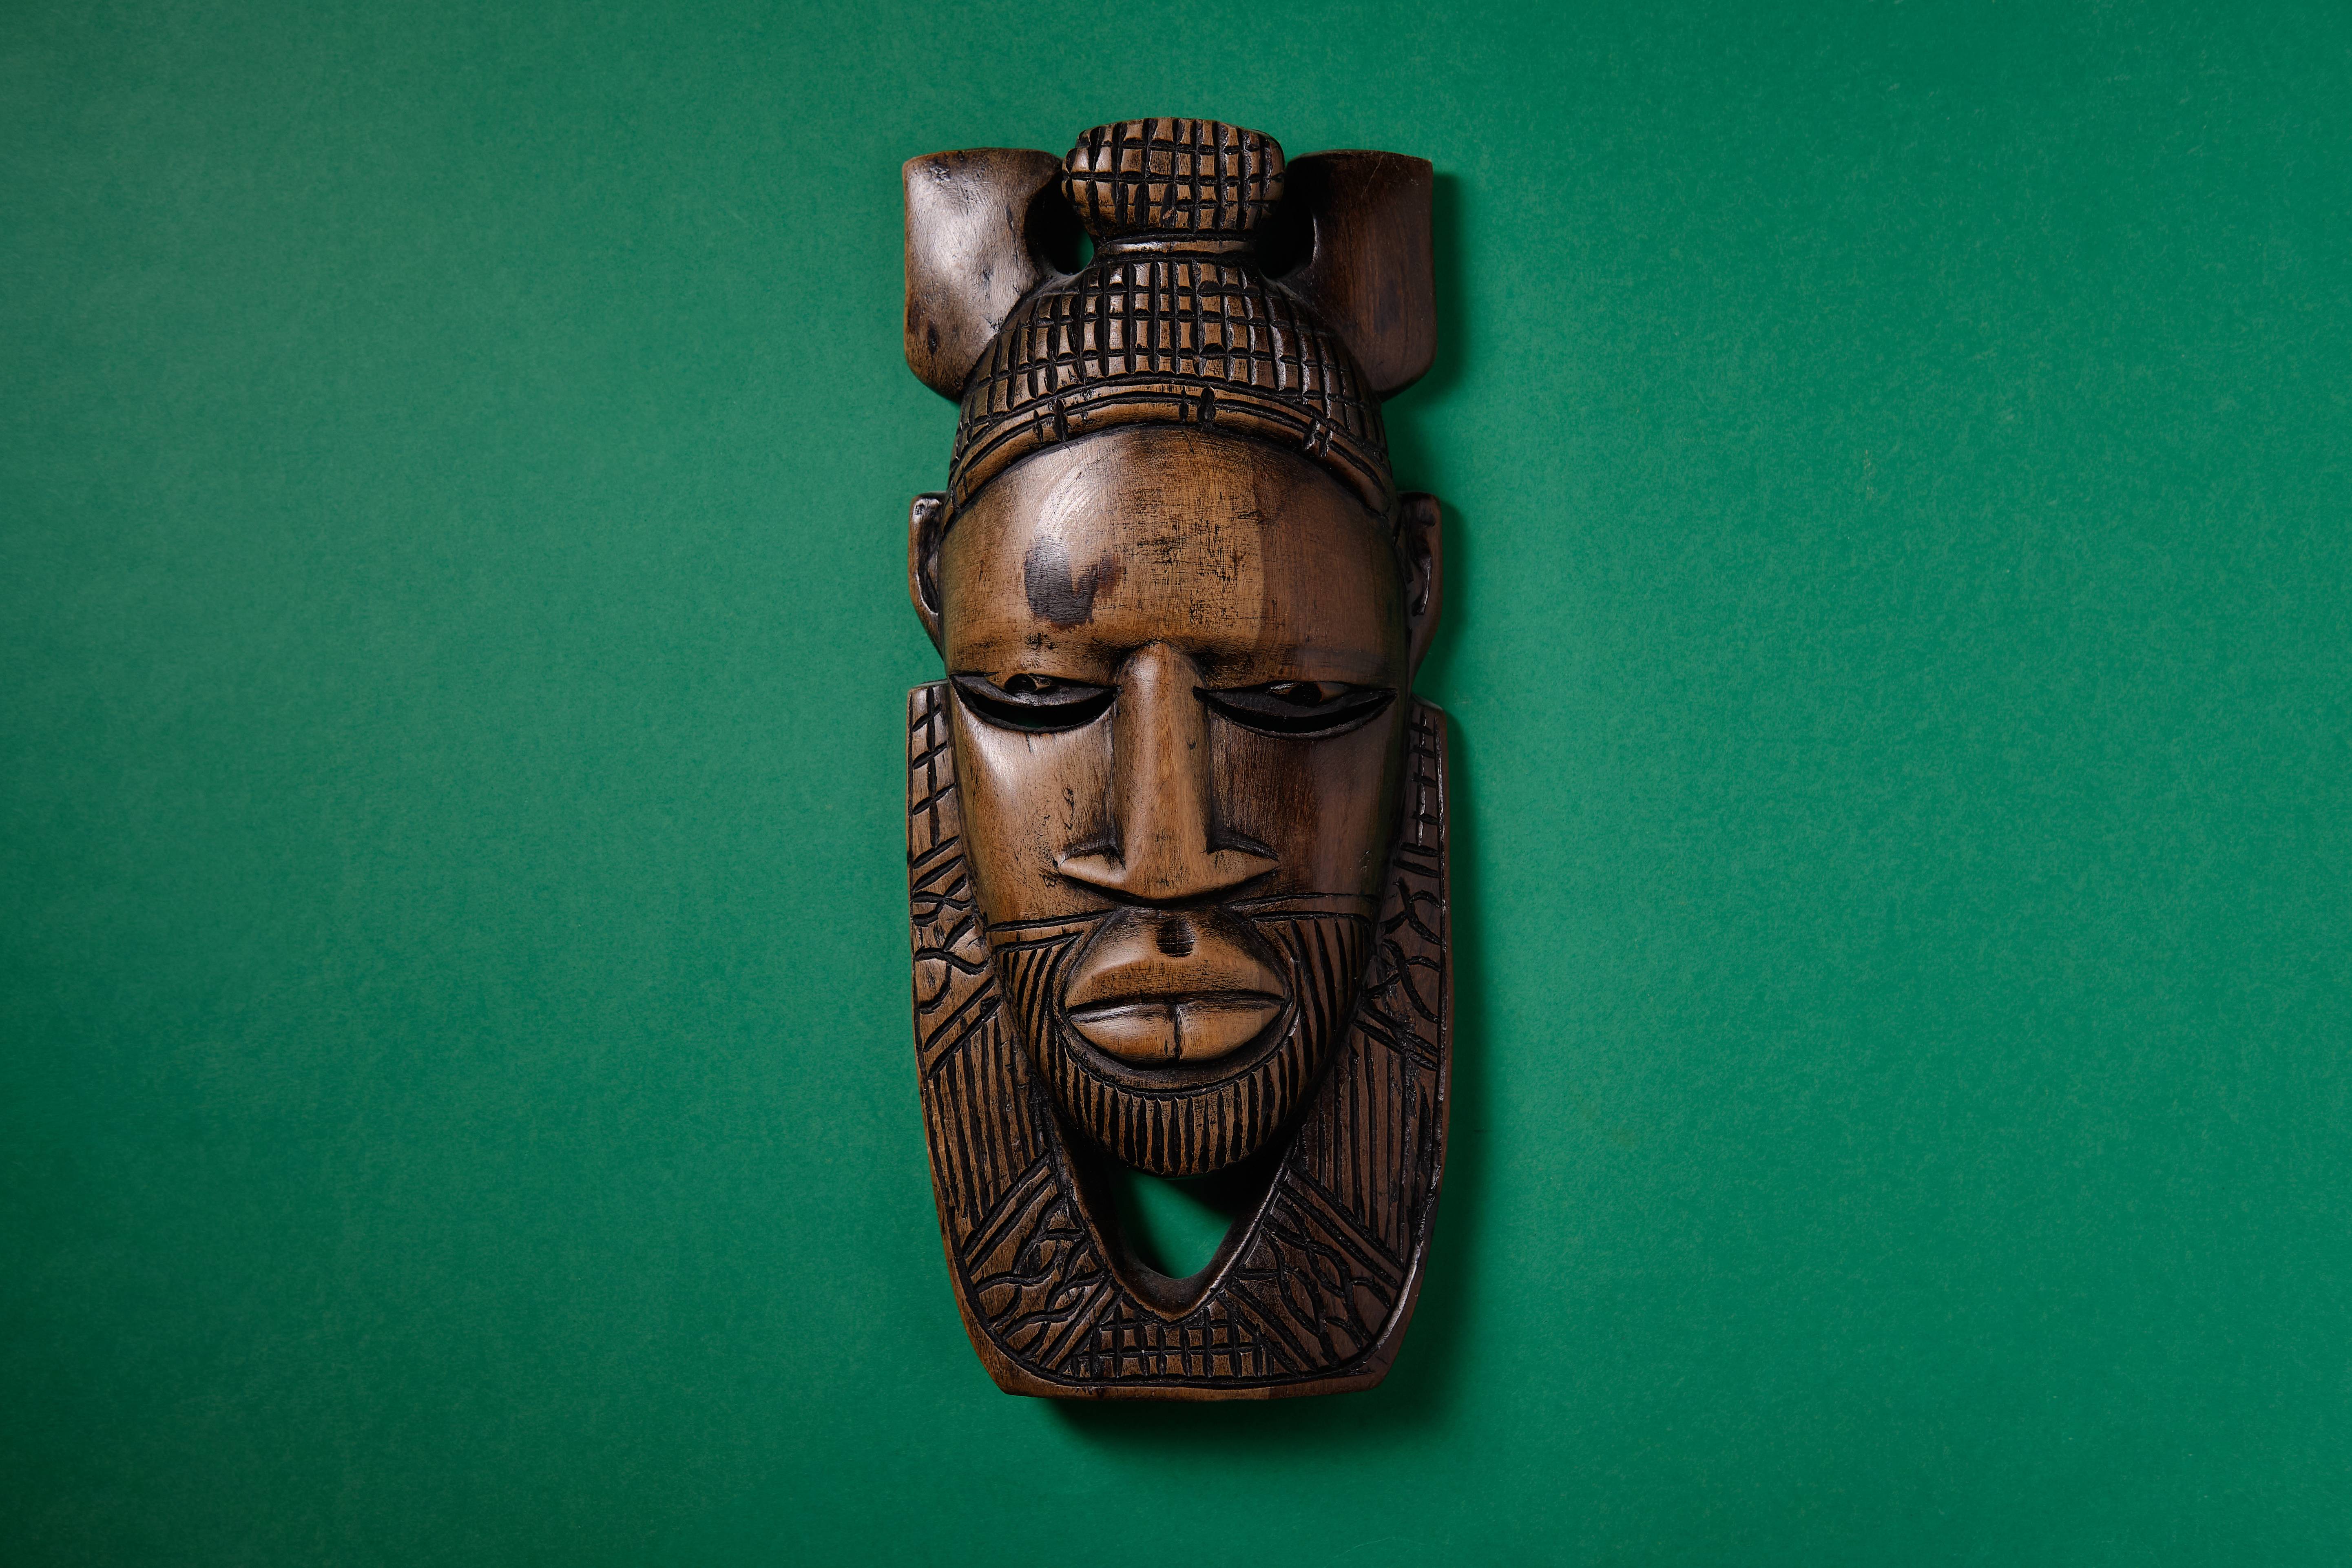 De l'influence de l'art tribal africain sur l'art moderne